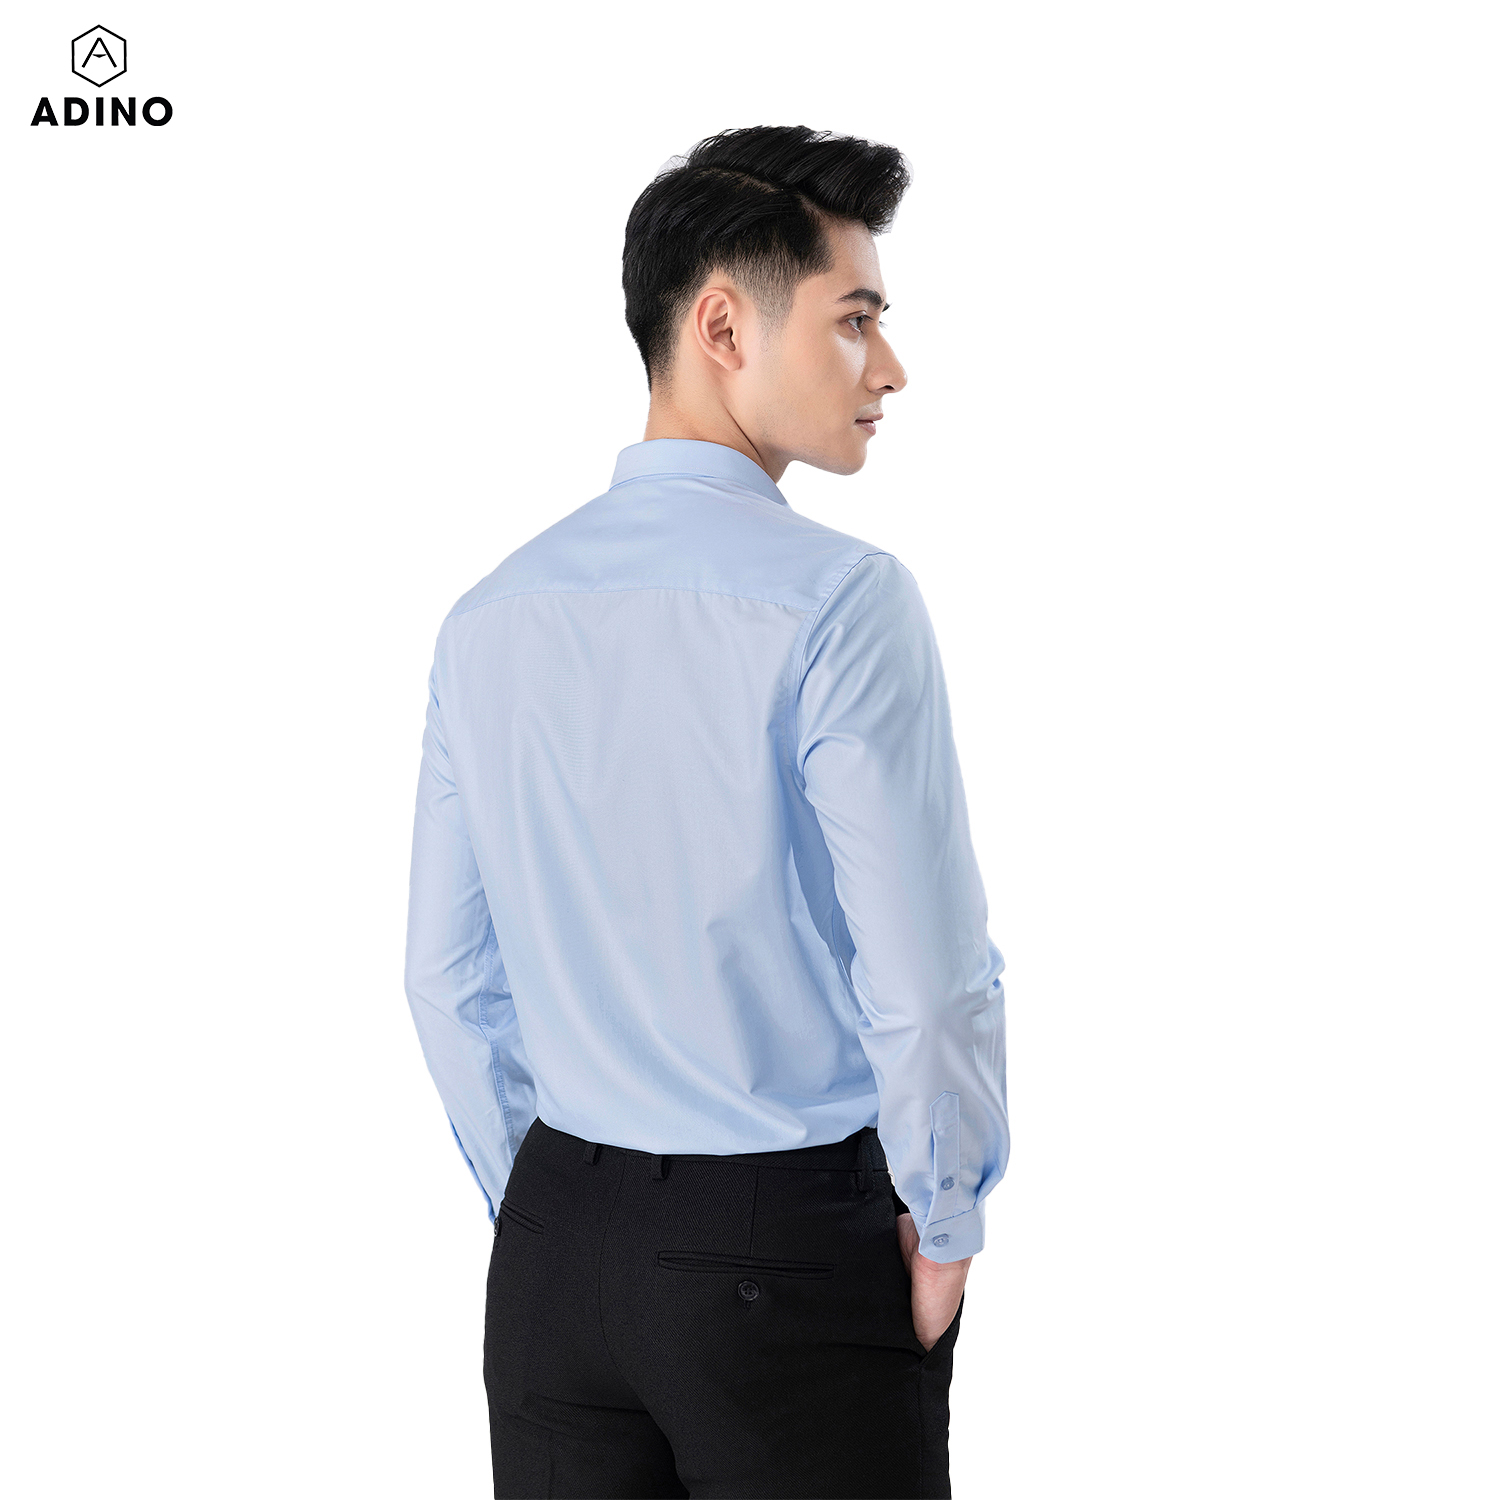 Áo sơ mi nam tay dài ADINO màu xanh nhạt dáng slimfit vải modal trẻ trung S304